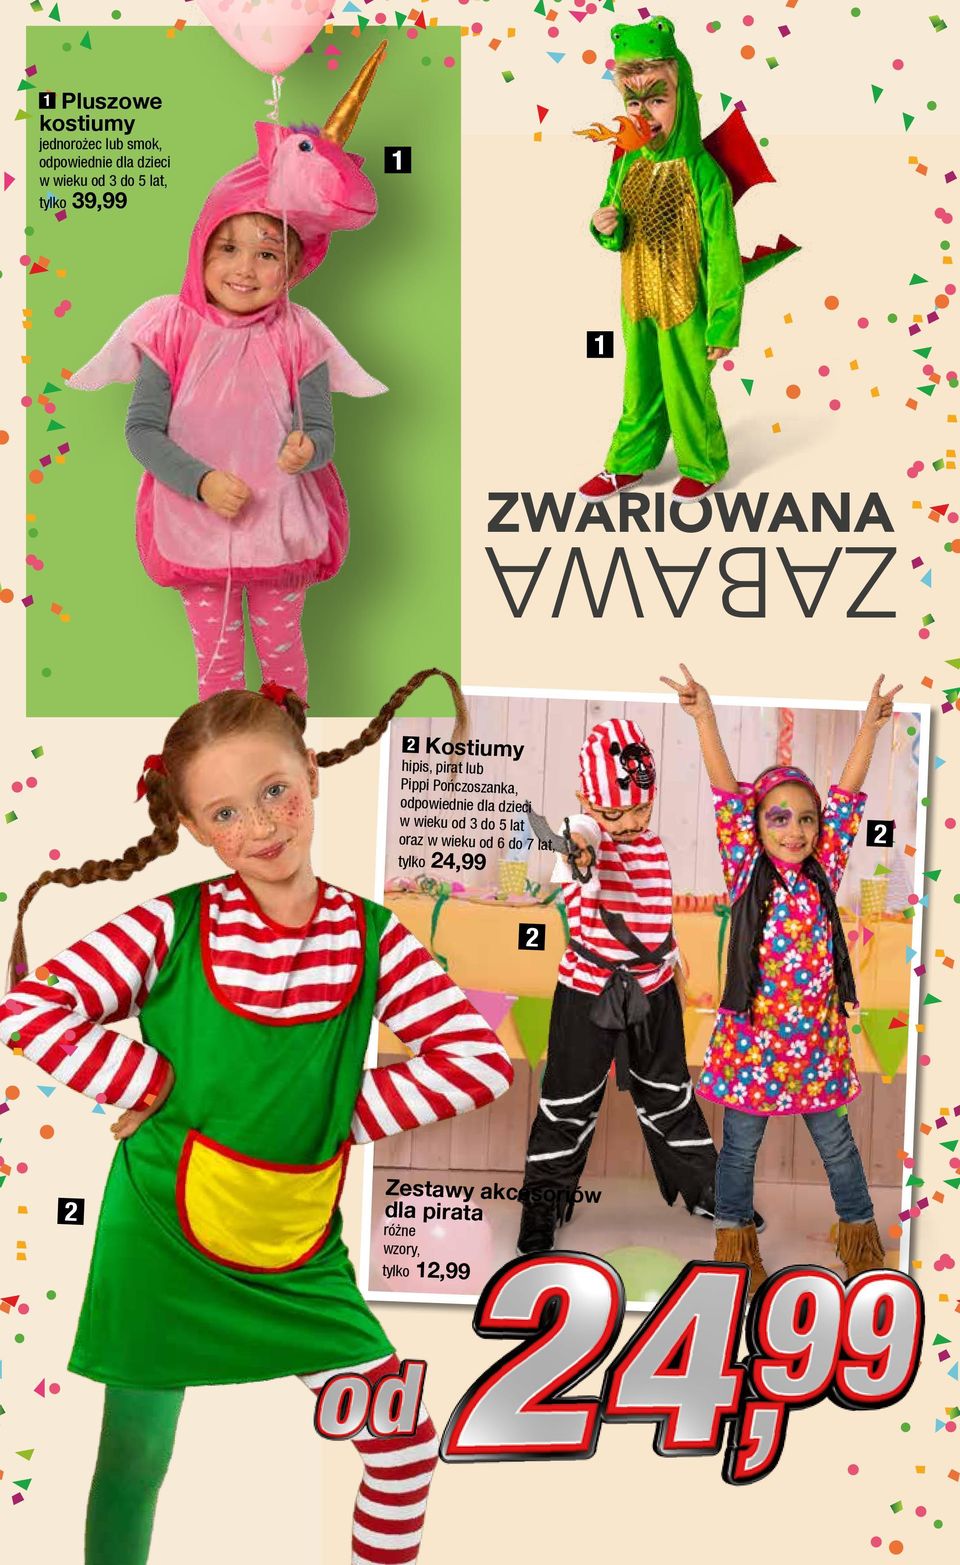 Pippi Pończoszanka, odpowiednie dla dzieci w wieku od 3 do 5 lat oraz w